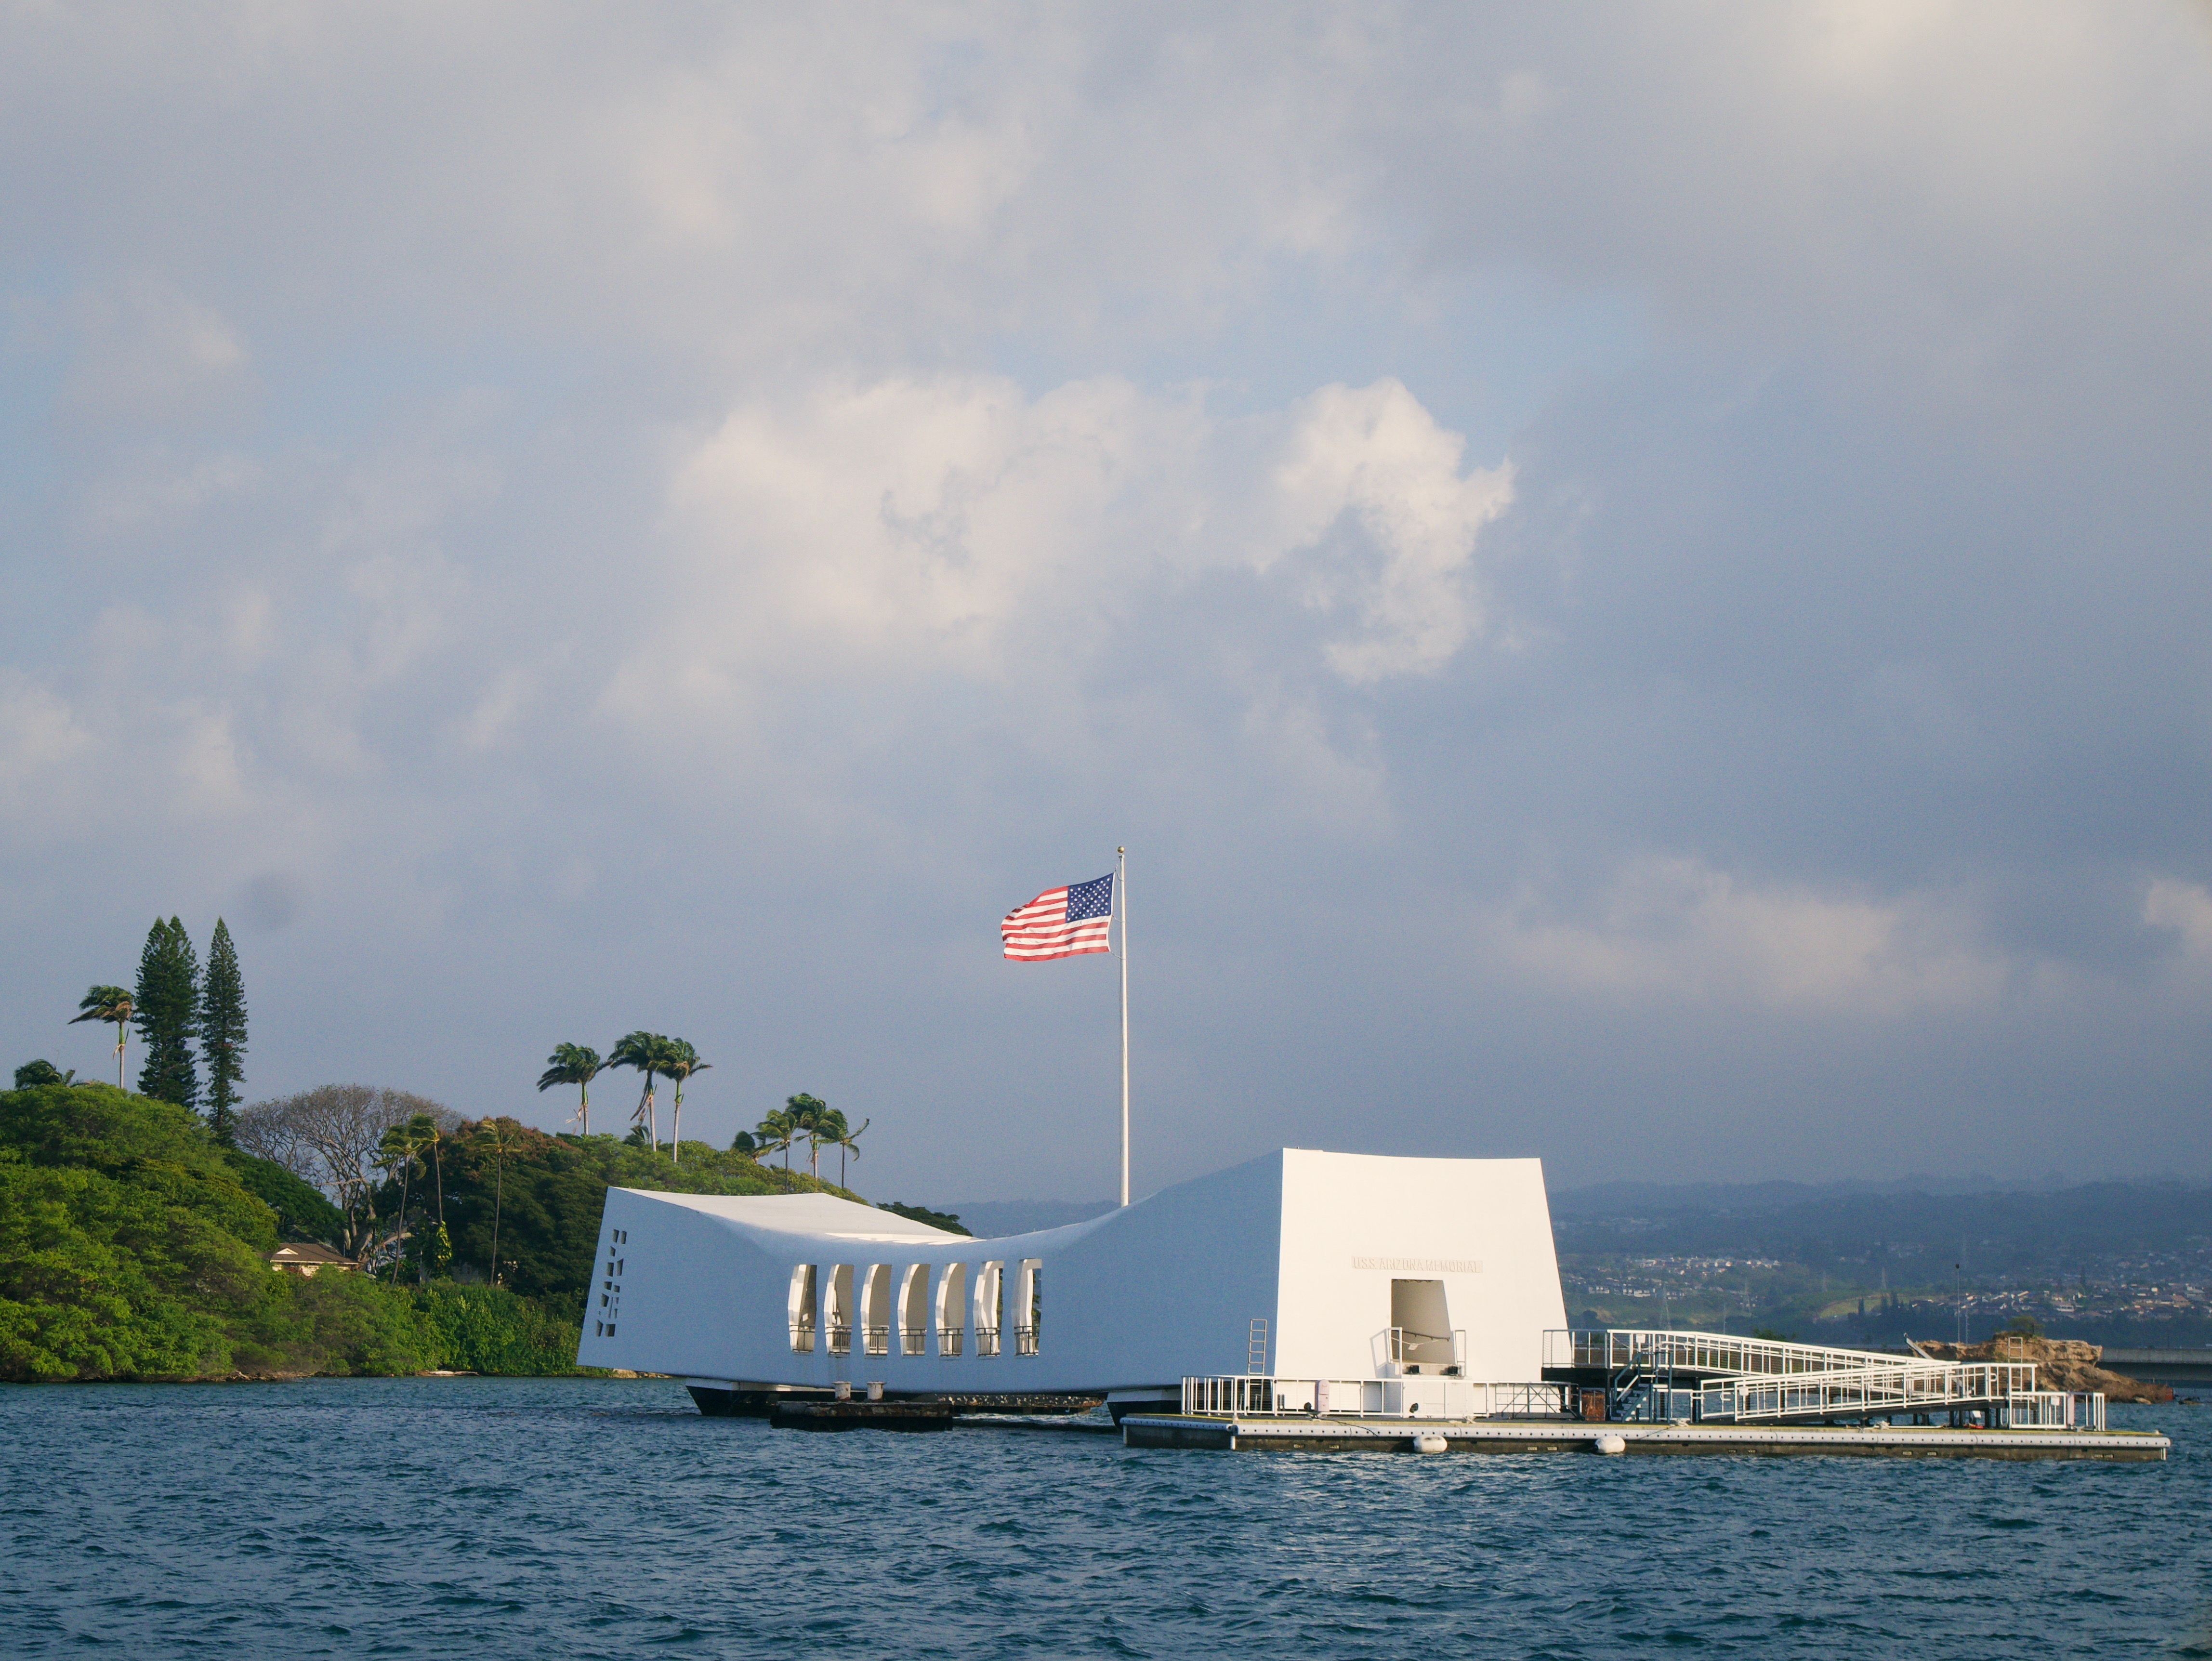 USS Arizona Memorial at Pearl Harbor in Hawaii